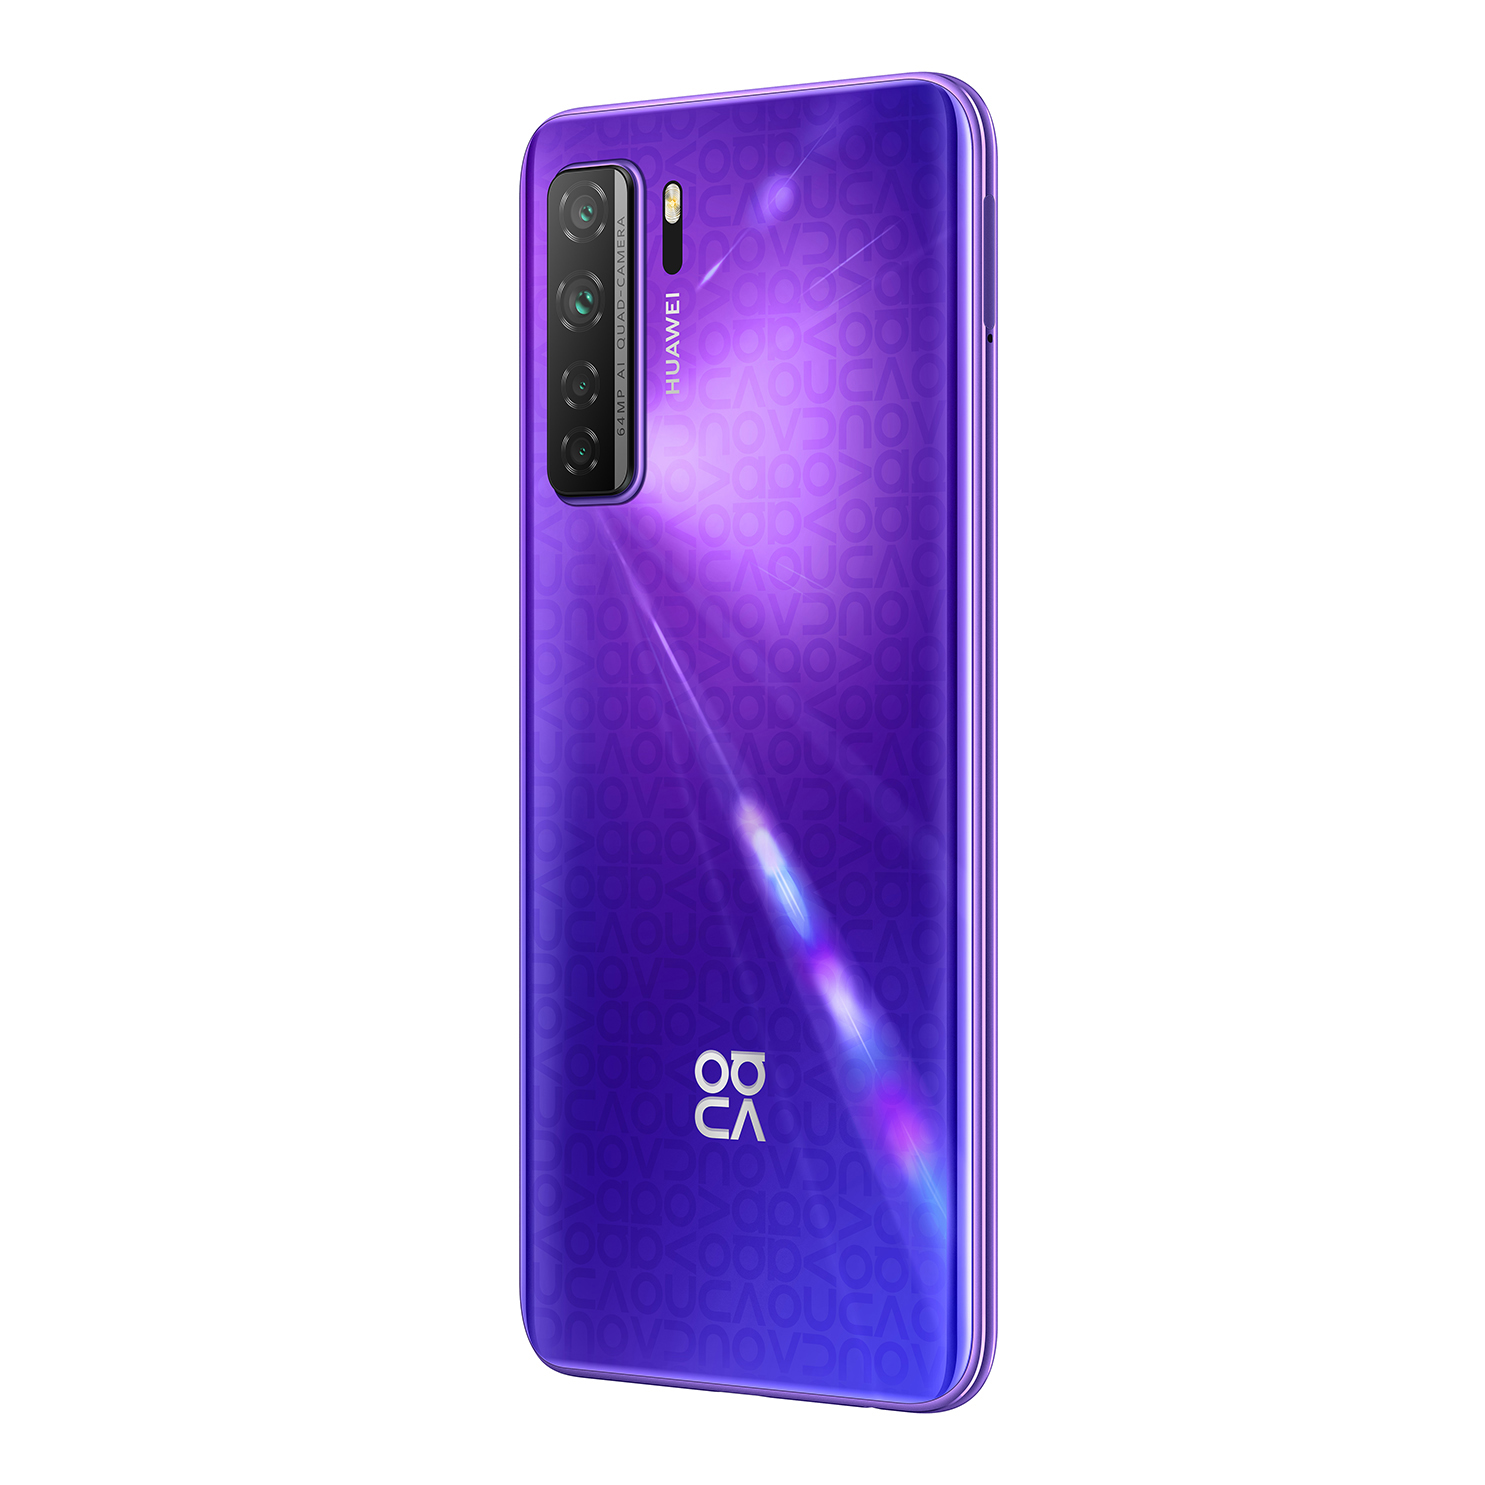 Huawei nova 7 SE purple rear